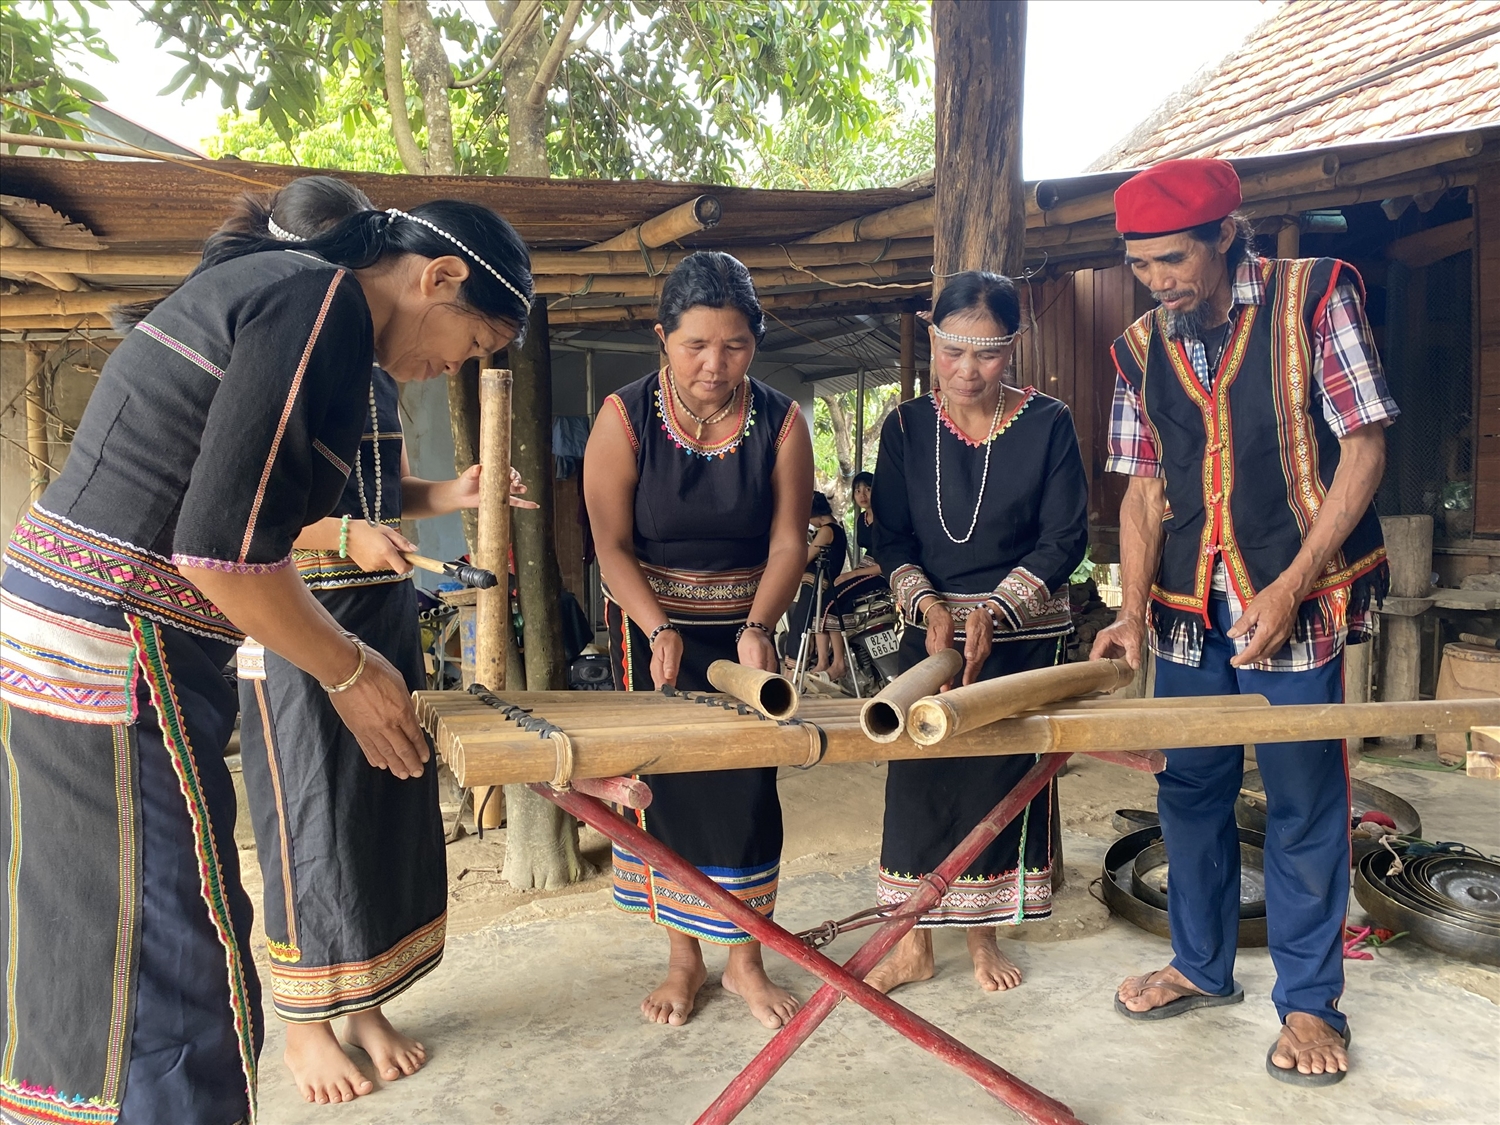 Nghệ nhân ưu tú A Thuih (ngoài cùng bên phải) hướng dẫn người dân trong làng trình diễn nhạc cụ truyền thống của dân tộc